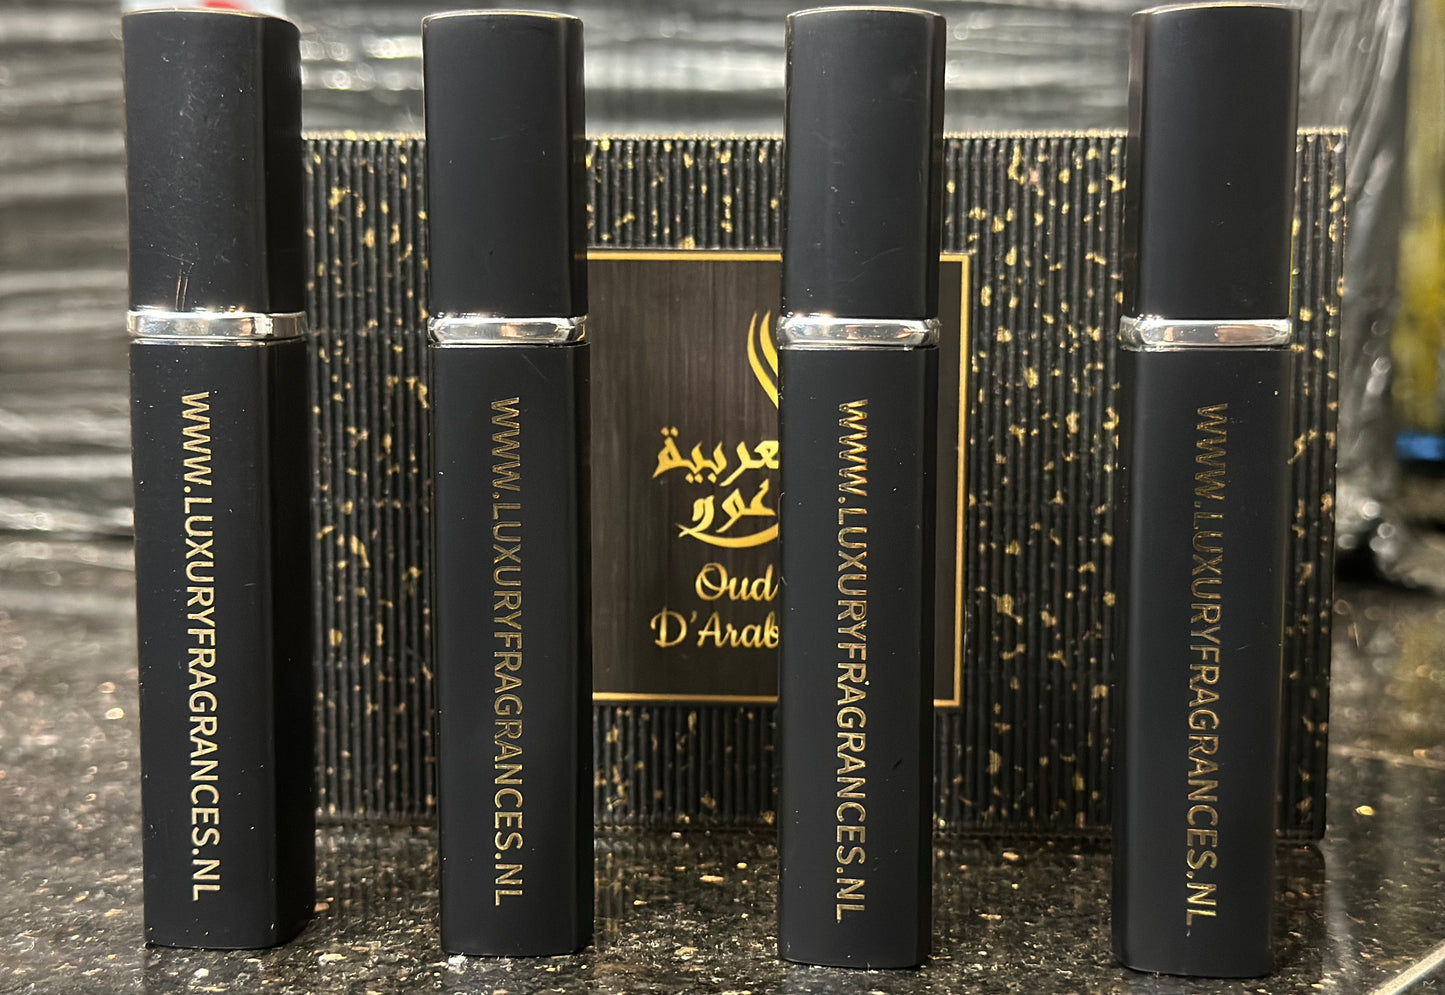 Parfums de Marl* - Oud d'Arabia Discovery Set Collection - Kies 4 voor € 49,95